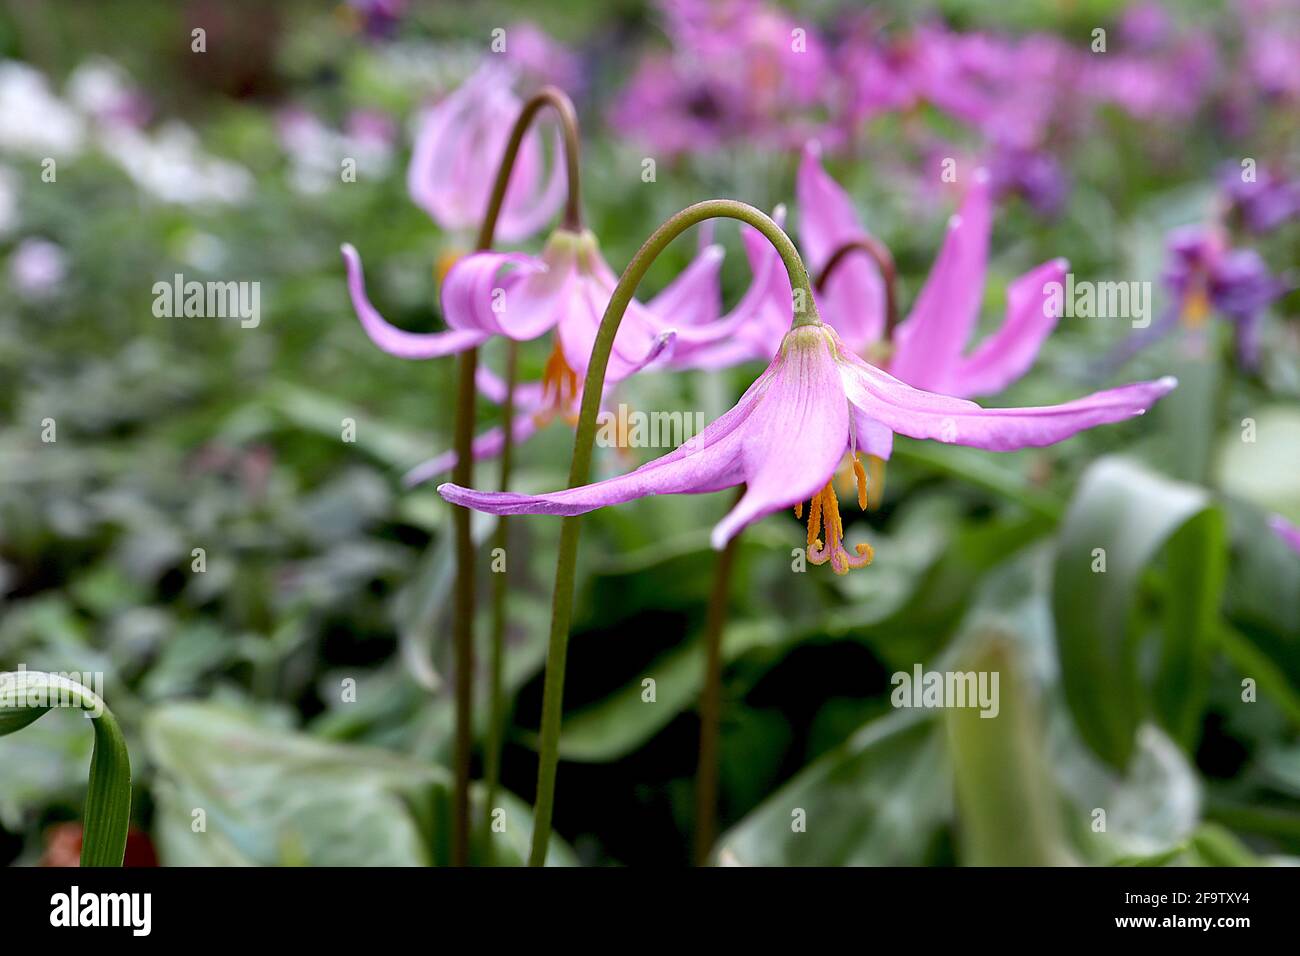 Erythronium revolutum acajou fauve nénuphar - grandes fleurs roses en forme de cloche avec des marques jaunes et des pétales suréchantillés, avril, Angleterre, Royaume-Uni Banque D'Images